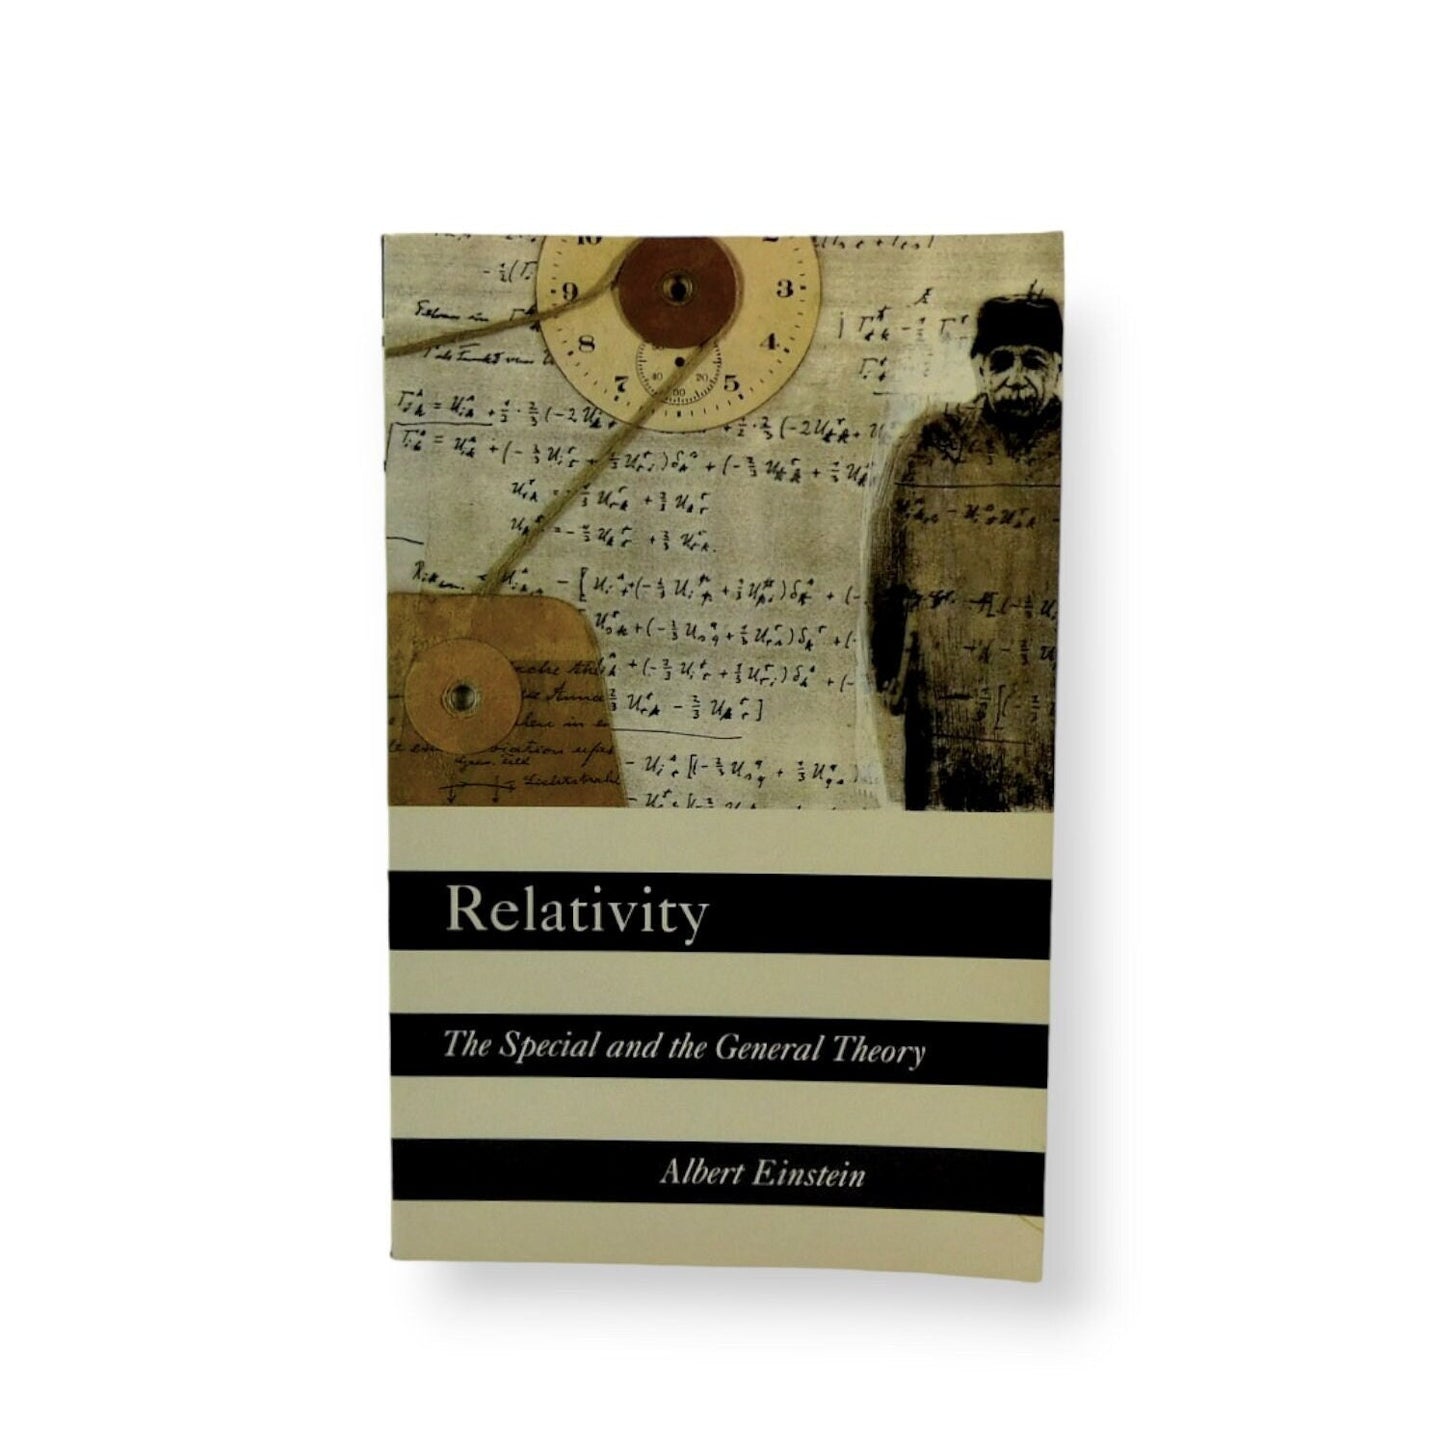 Relativity by Albert Einstein 1961